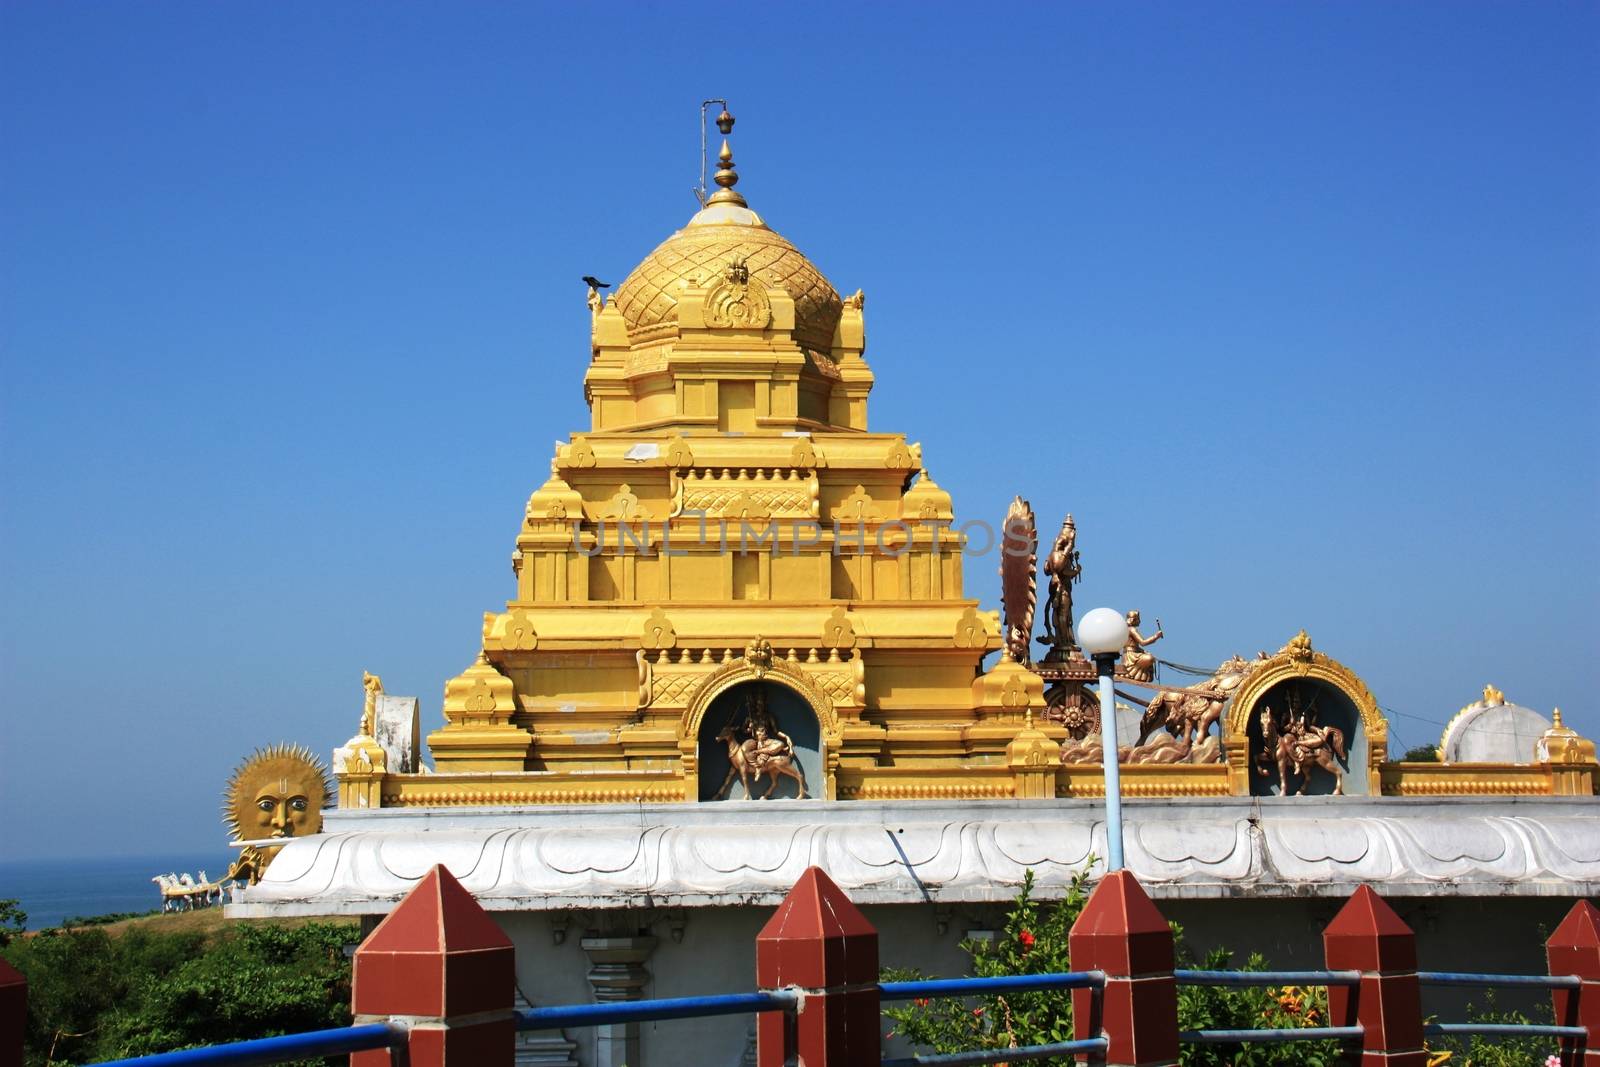 Golden temple Sivav temple complex of Murudeshwara in Gokarna in India